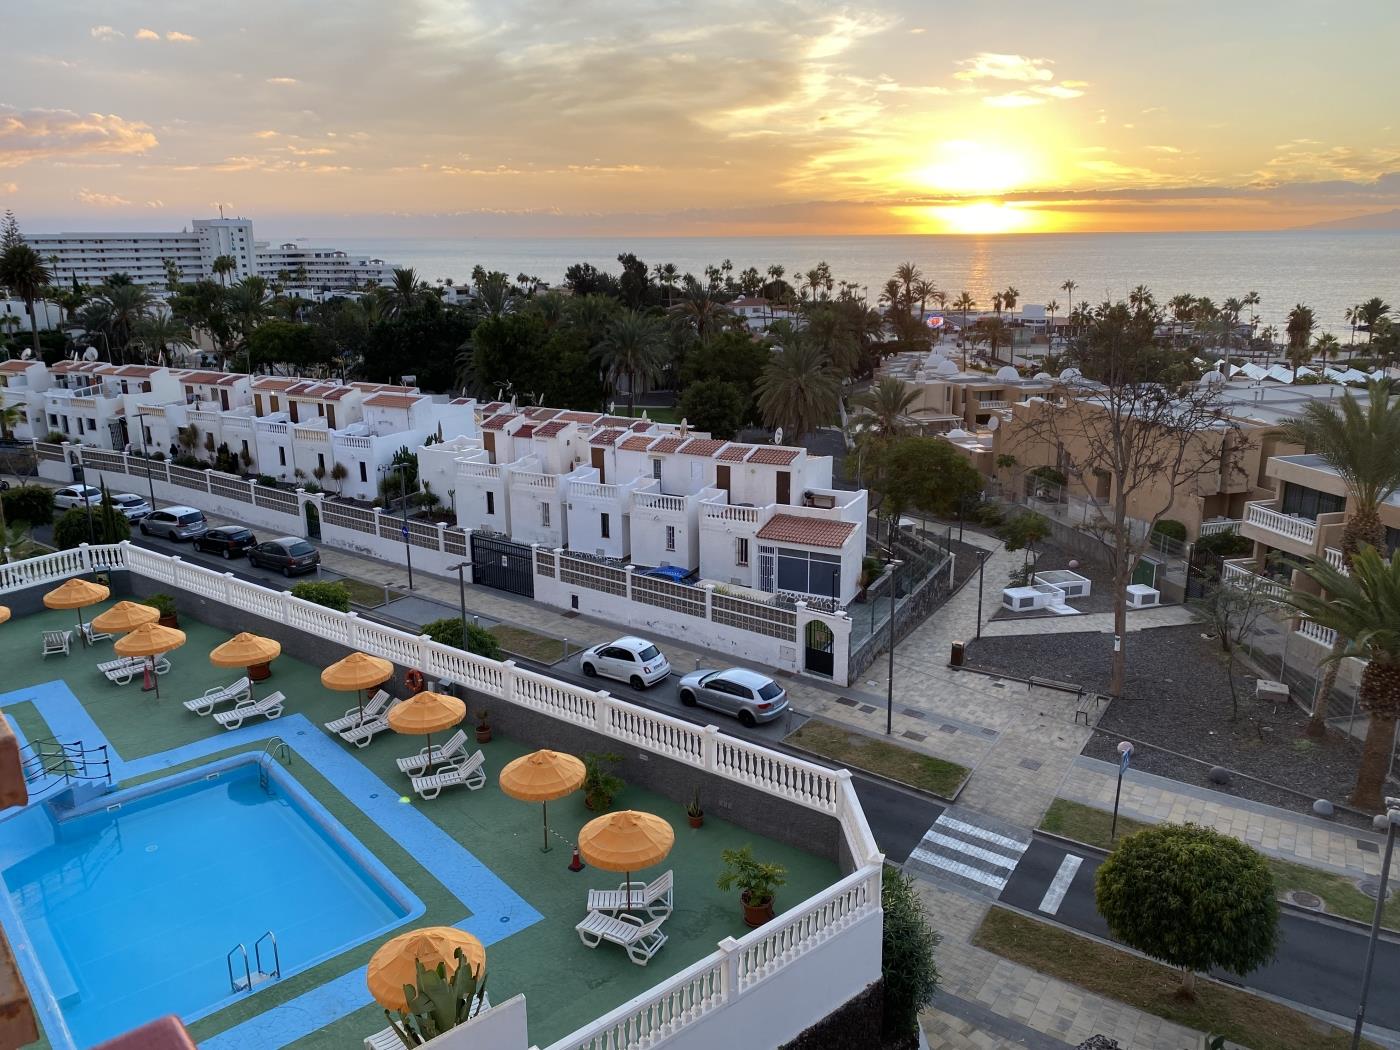 1 Bedroom apartment with amazing ocean view in Playa de las Américas